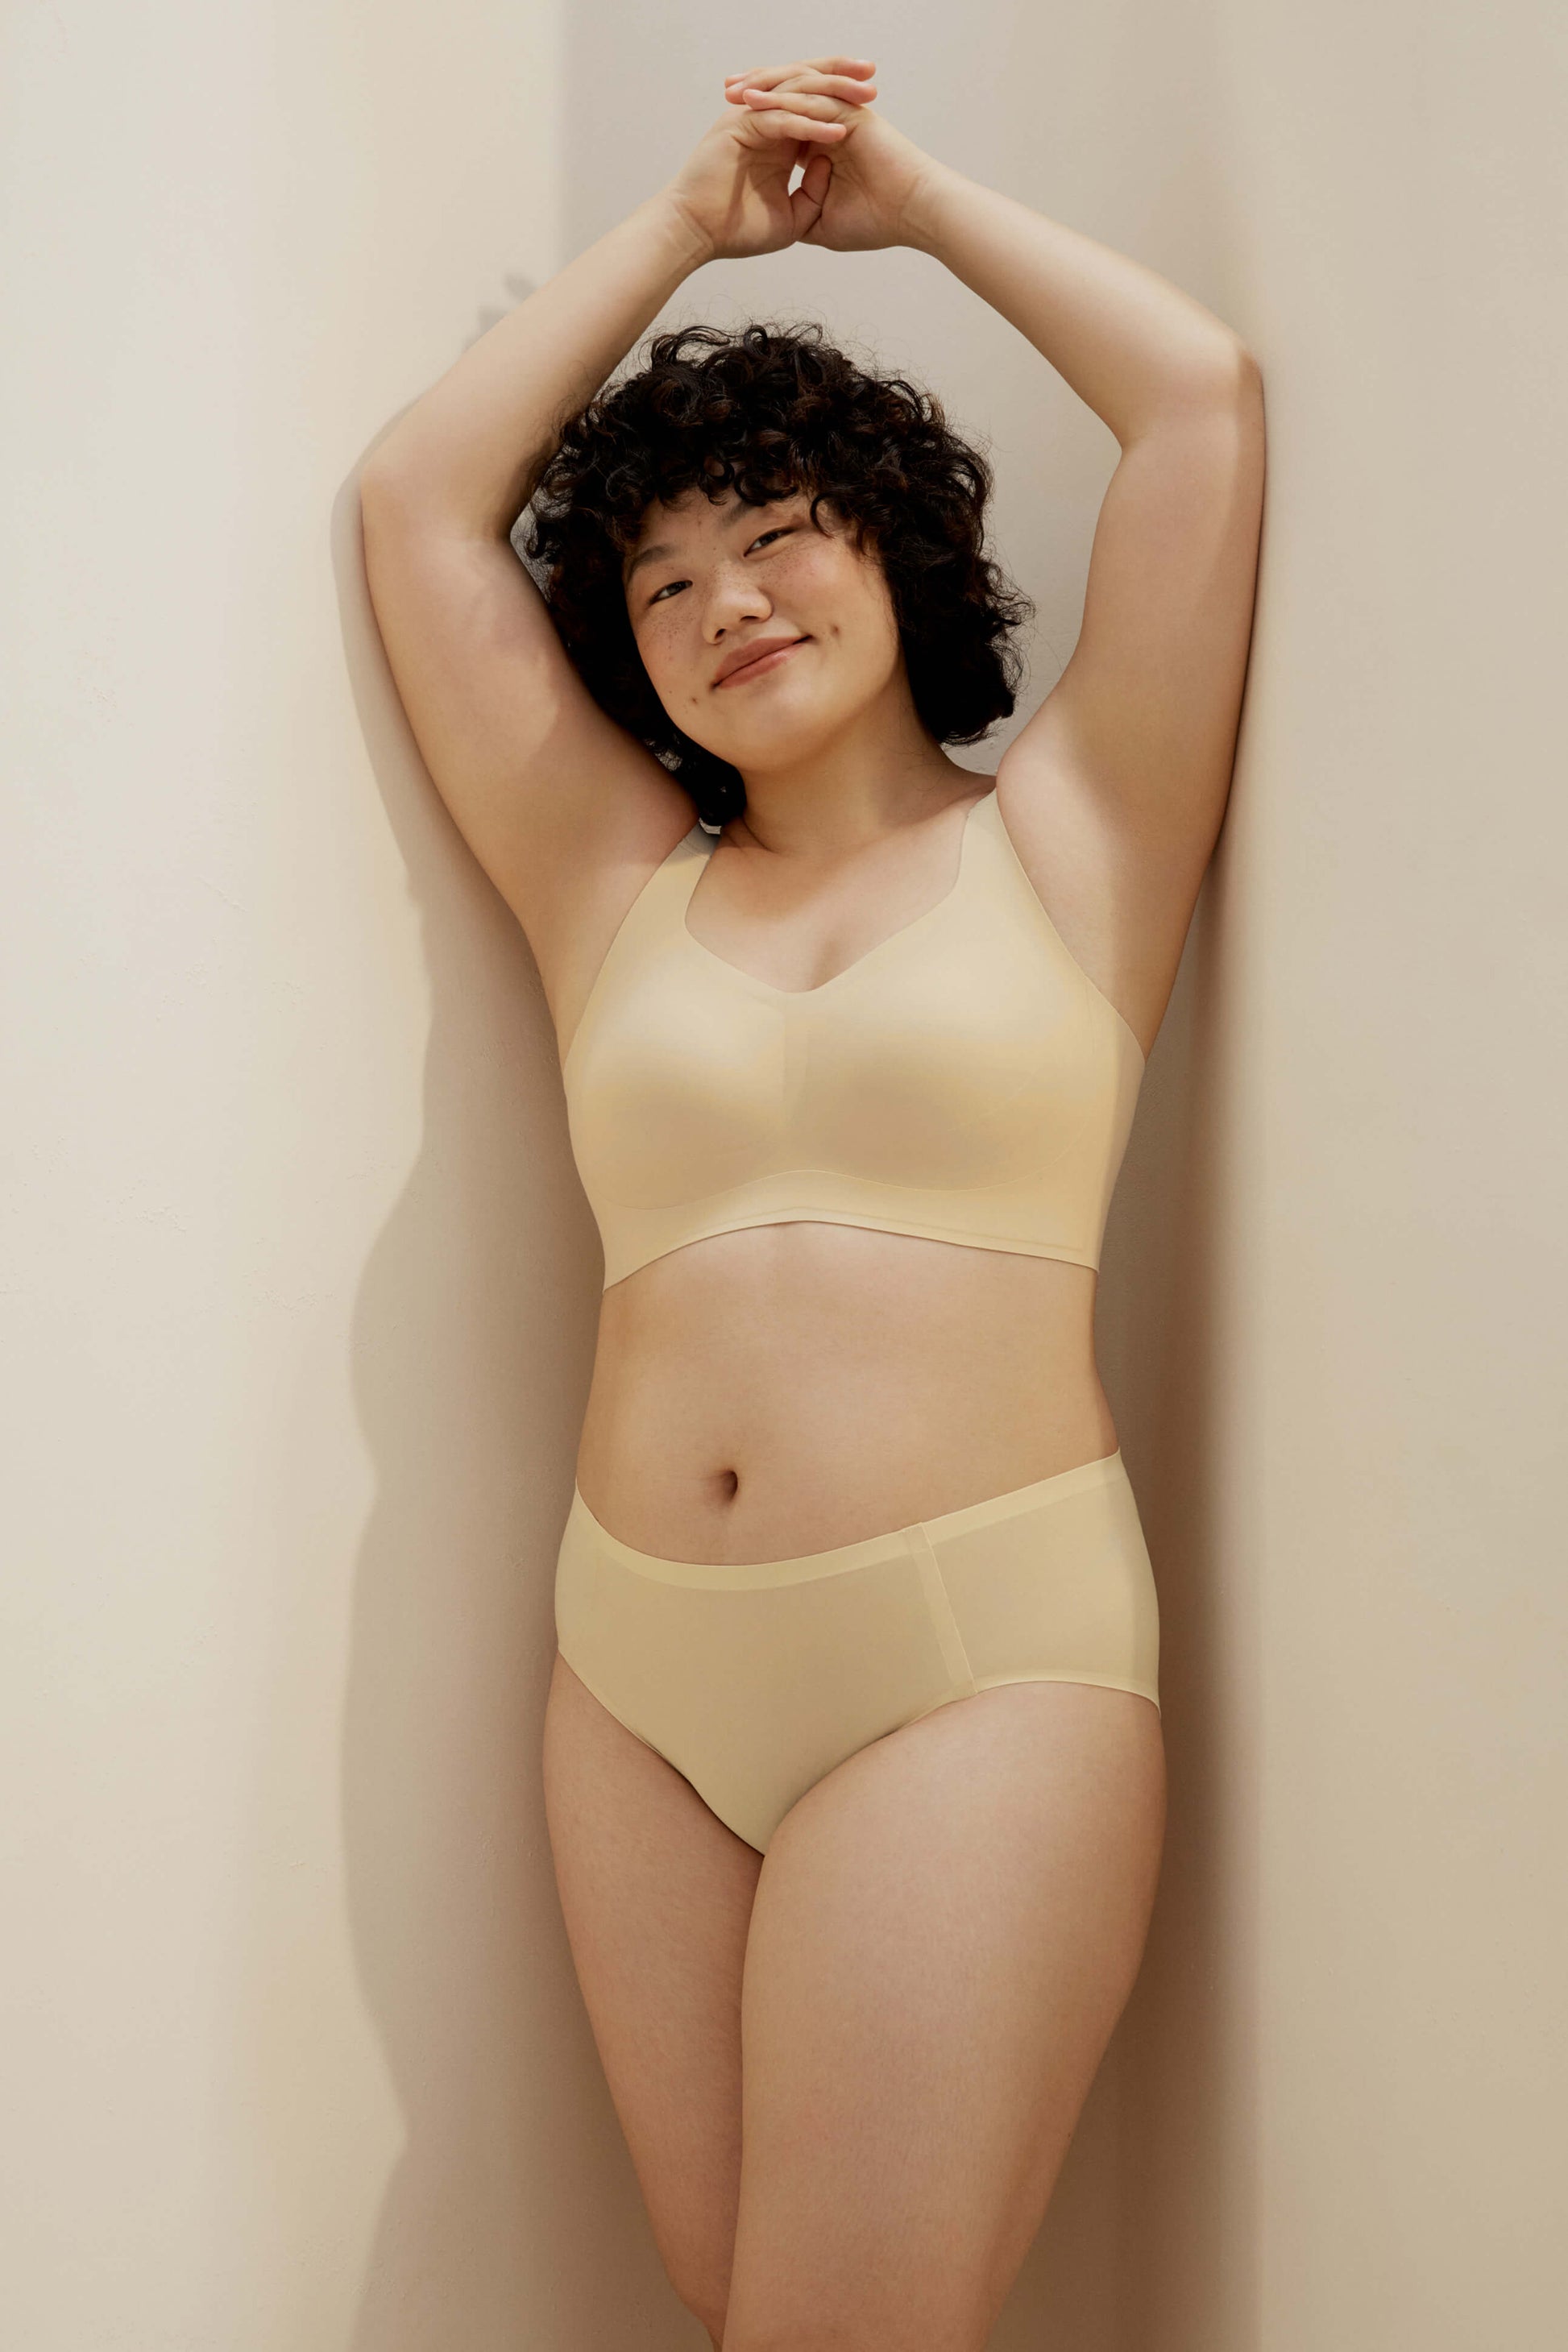 woman wearing light yellow bra and matching panties